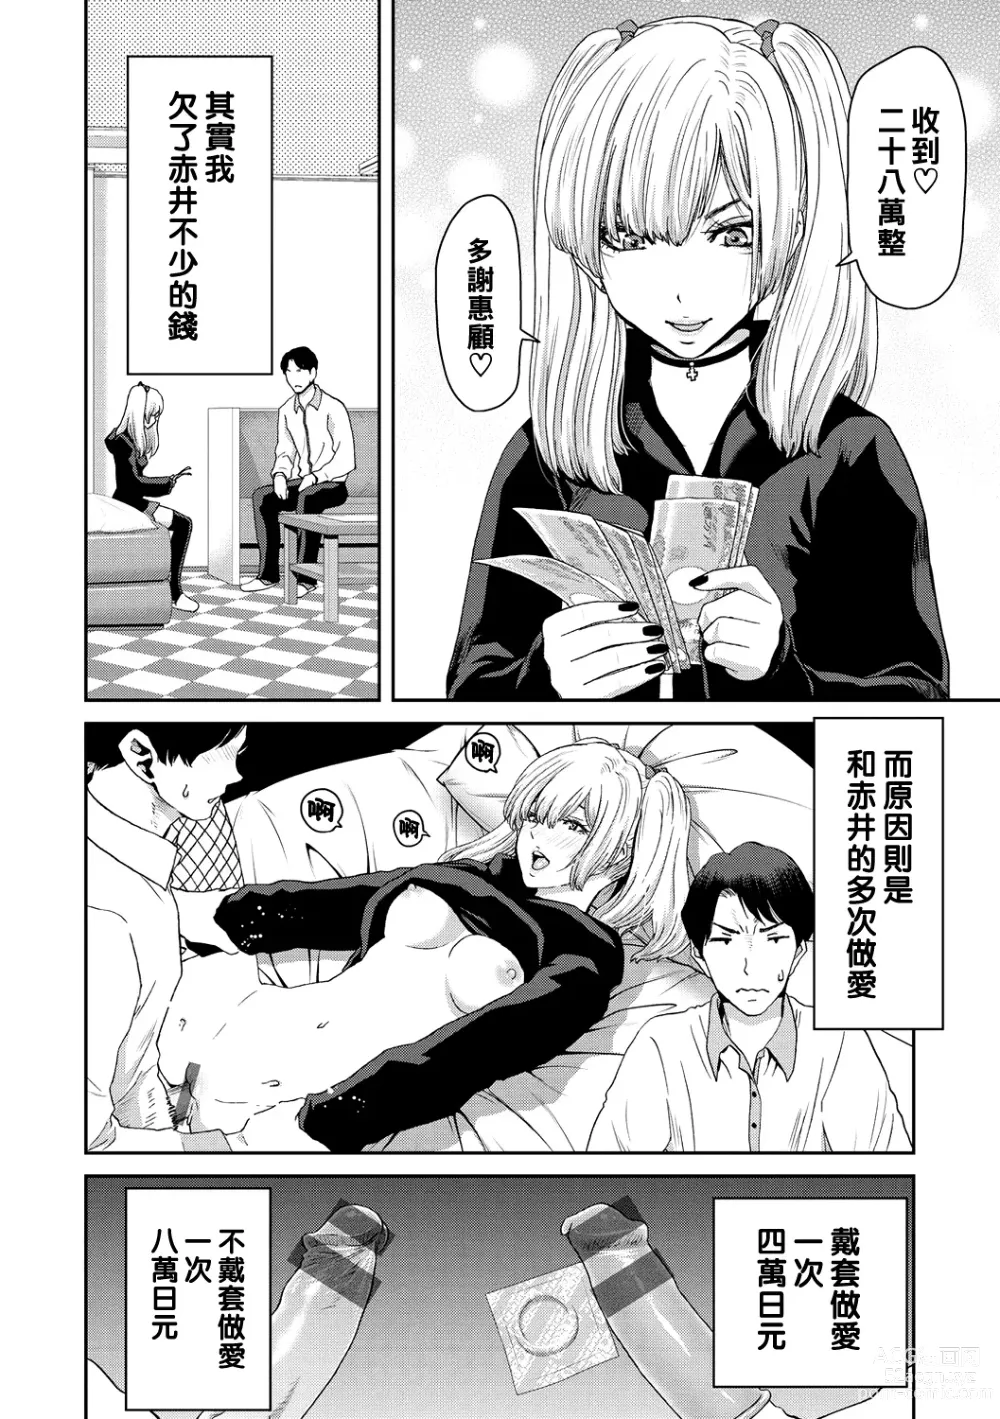 Page 8 of manga Shiyokka Hametsu SEX